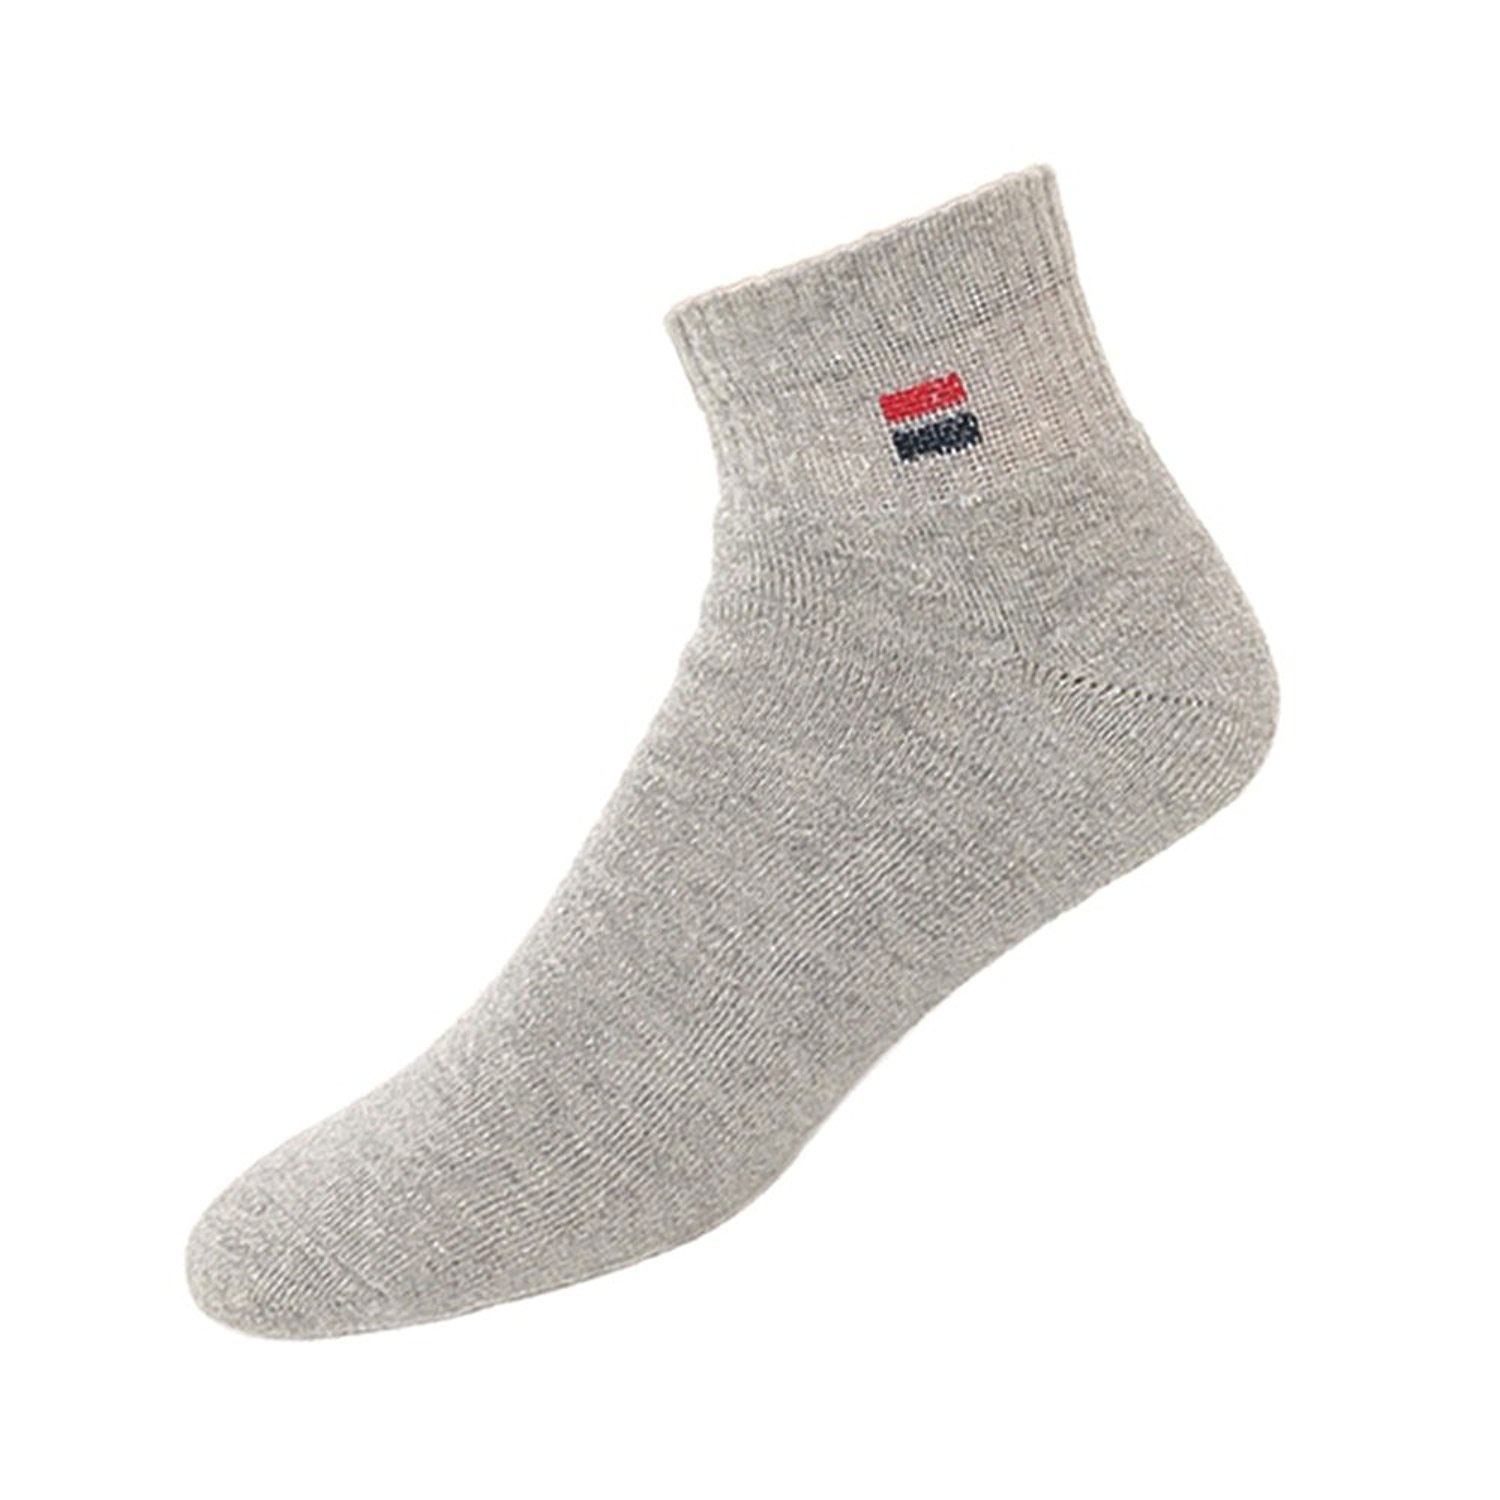 Navy Sport Men's Cotton Socks - Pack of 3 (Multi-Coloured)